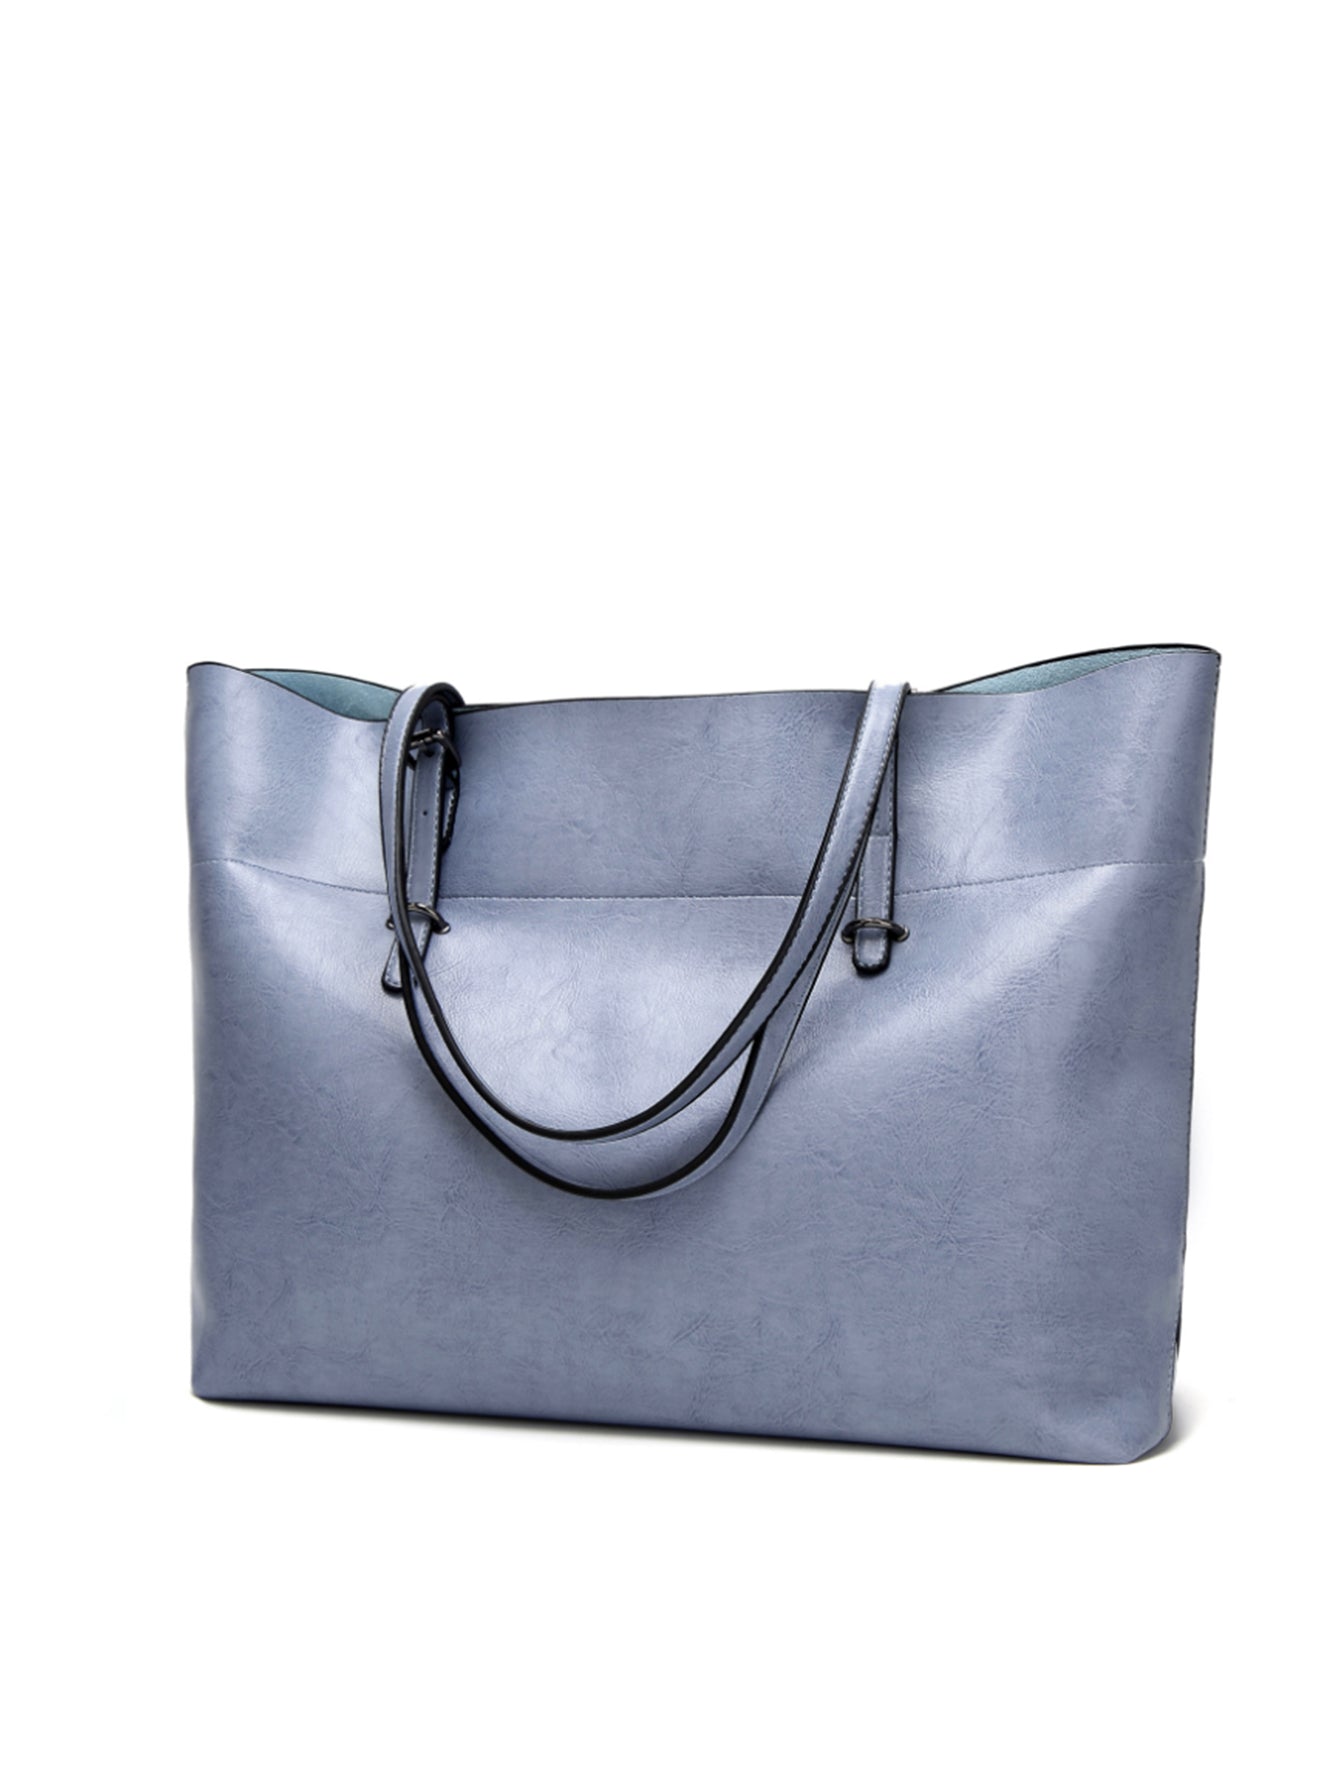 Women Handbags Designer Top Handle Tote Large Purses Ladies Shoulder Bag Sai Feel